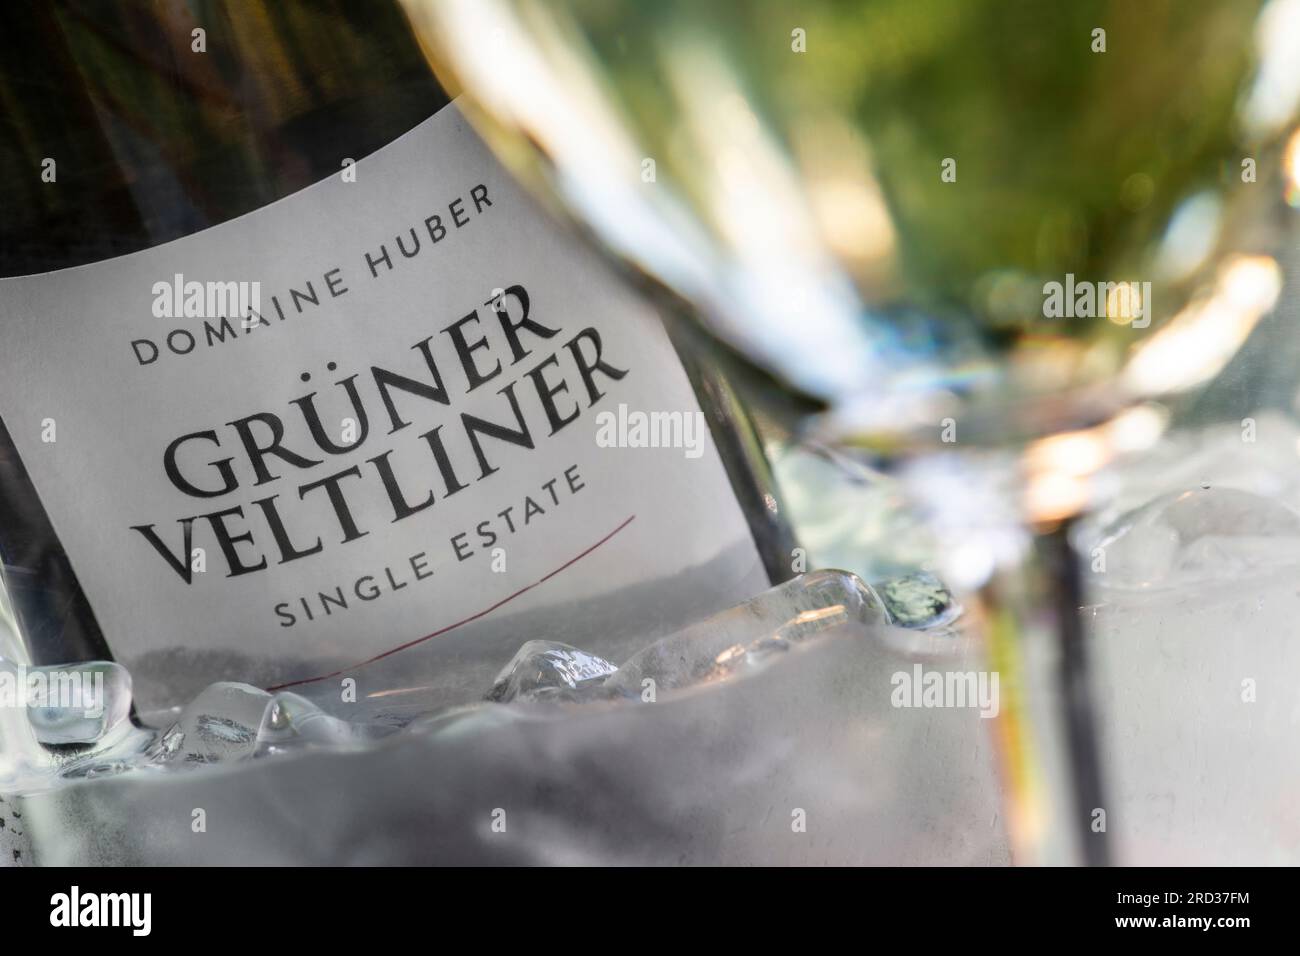 Grüner Veltliner Domaine Huber "singola azienda" vino austriaco in un refrigeratore all'aperto con bicchiere di vino Grüner Veltliner in primo piano Foto Stock